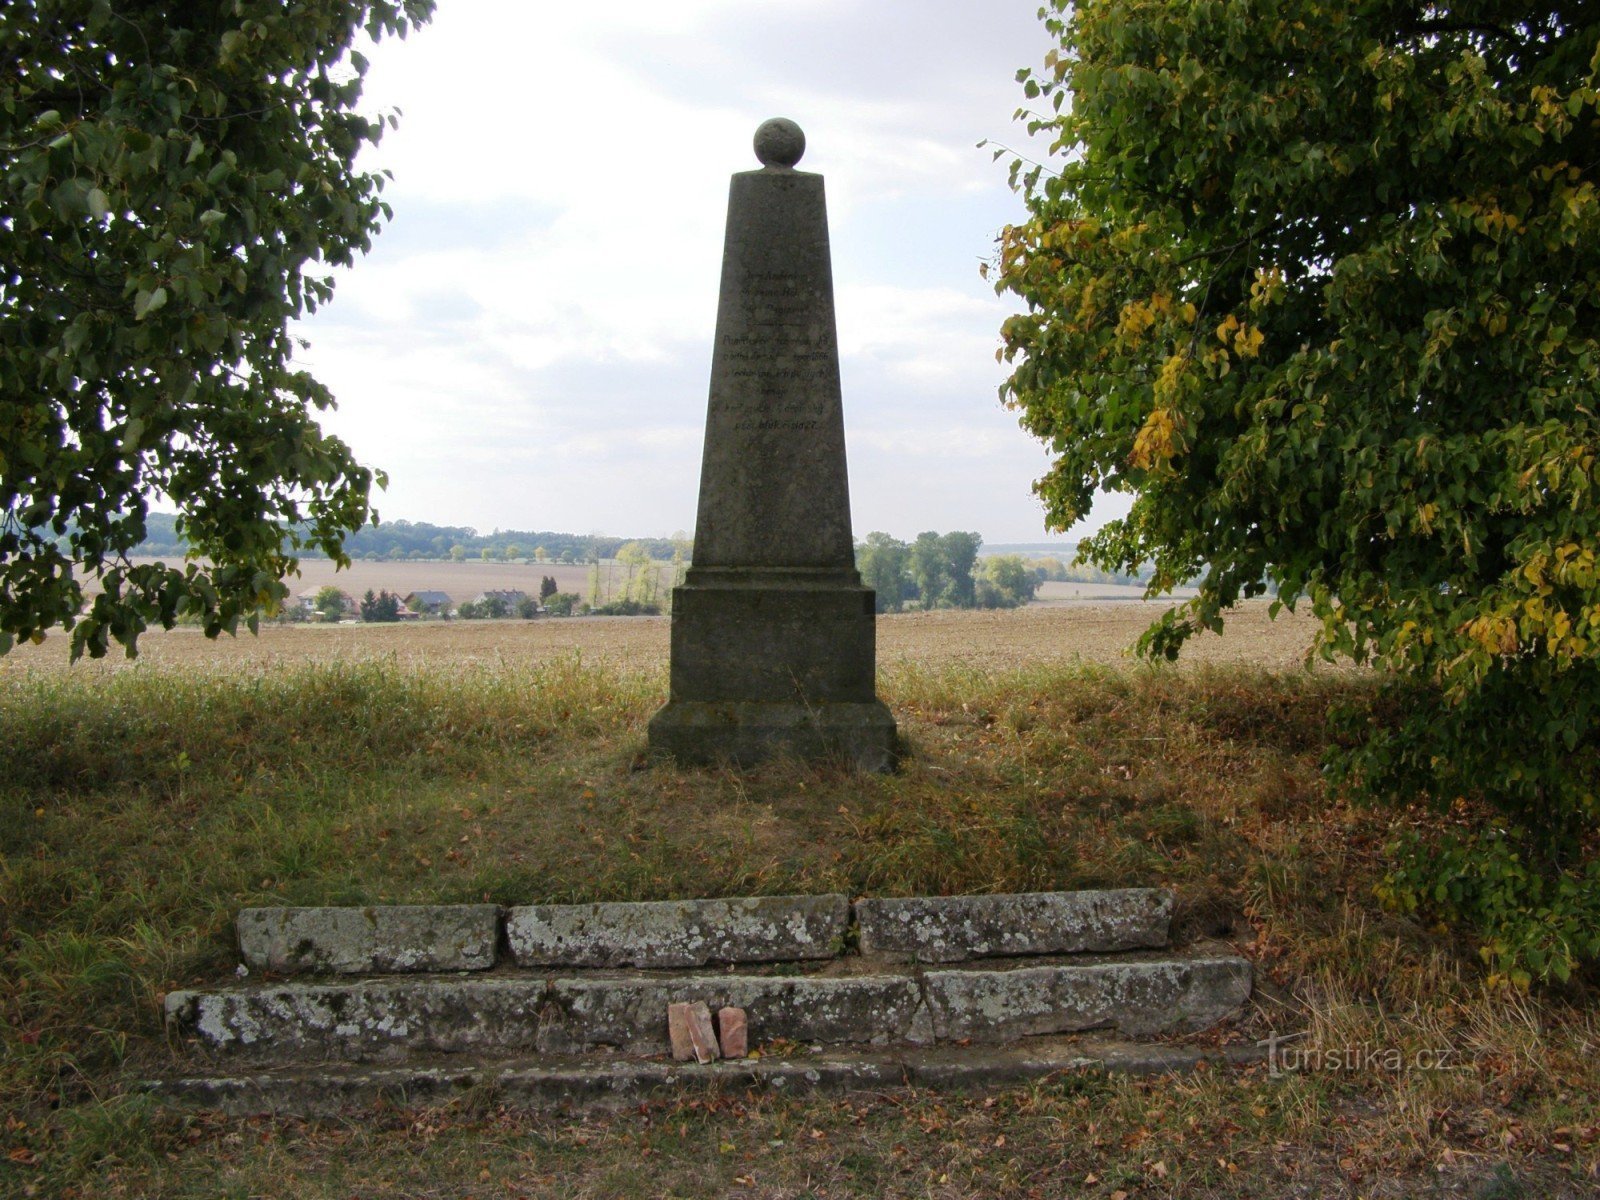 Čisteves - spomenik pruskoj 2. magdeburškoj pješačkoj pukovniji br. 27.